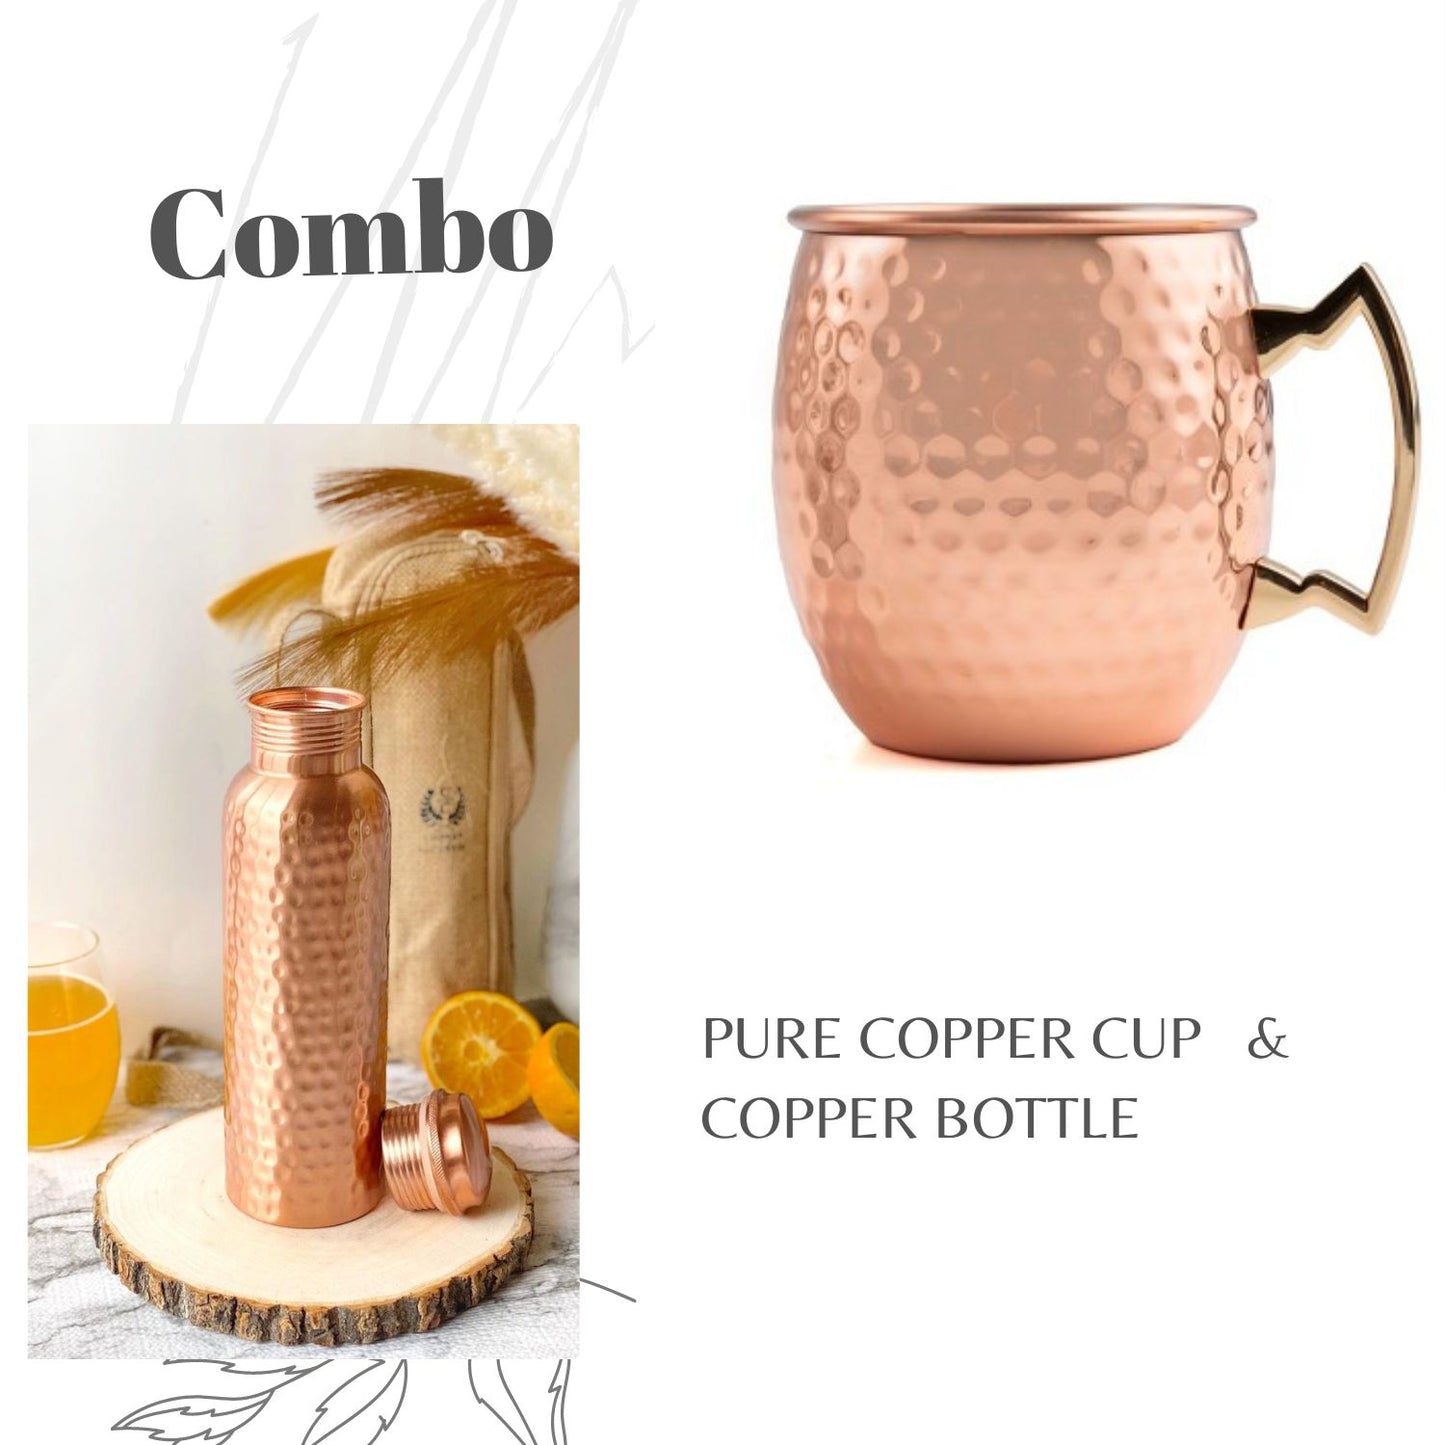 Copper Bottle and copper mug set